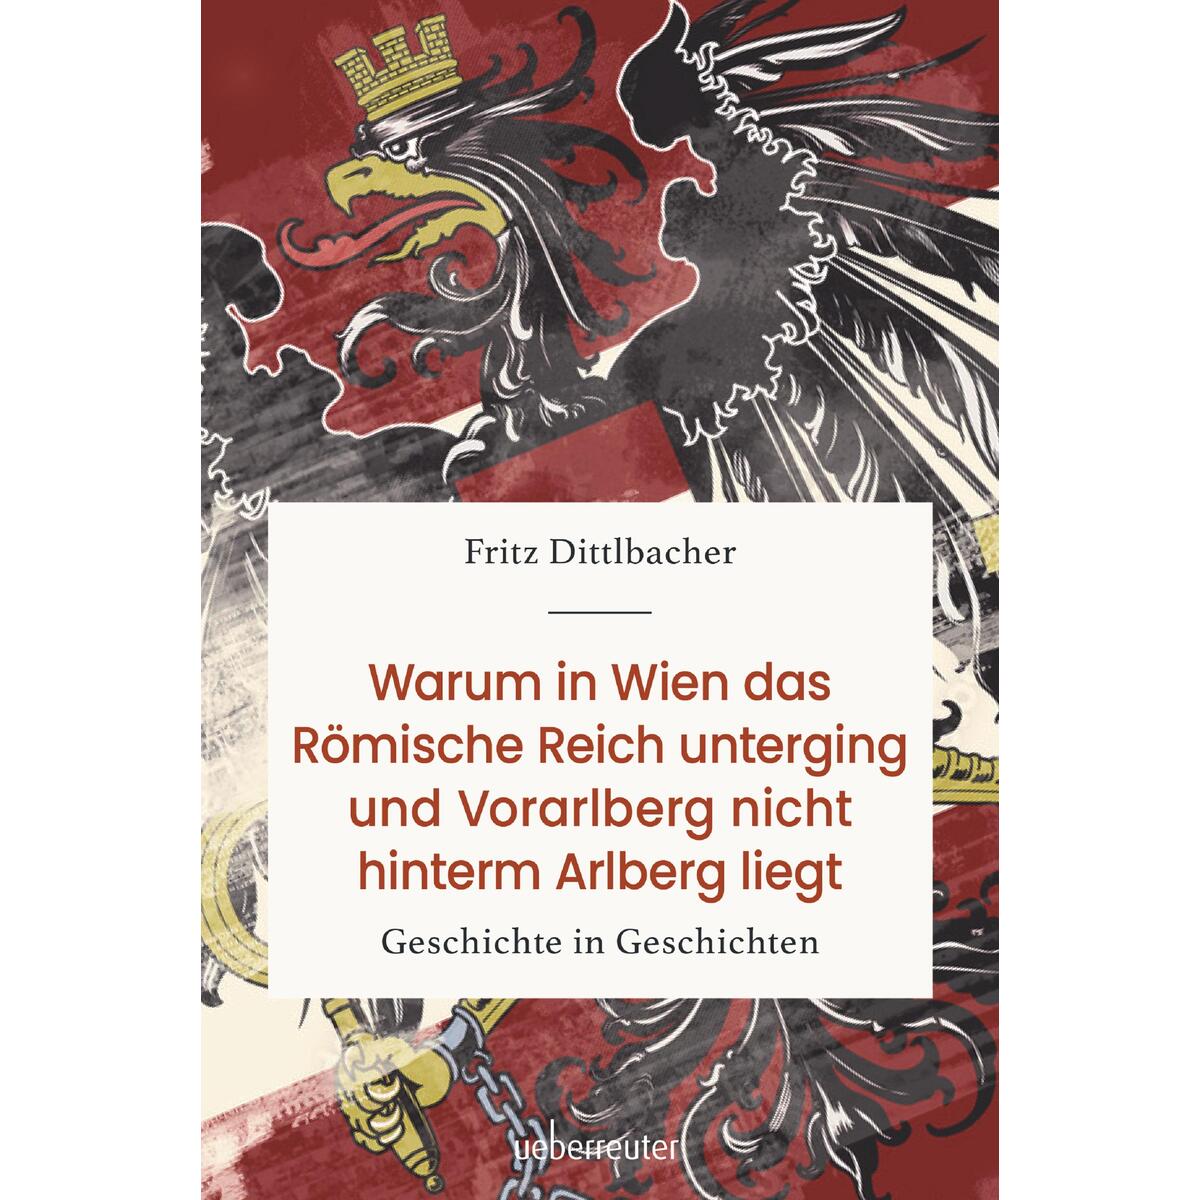 Warum in Wien das Römische Reich unterging und Vorarlberg nicht hinterm Arlberg ... von Ueberreuter, Carl Verlag